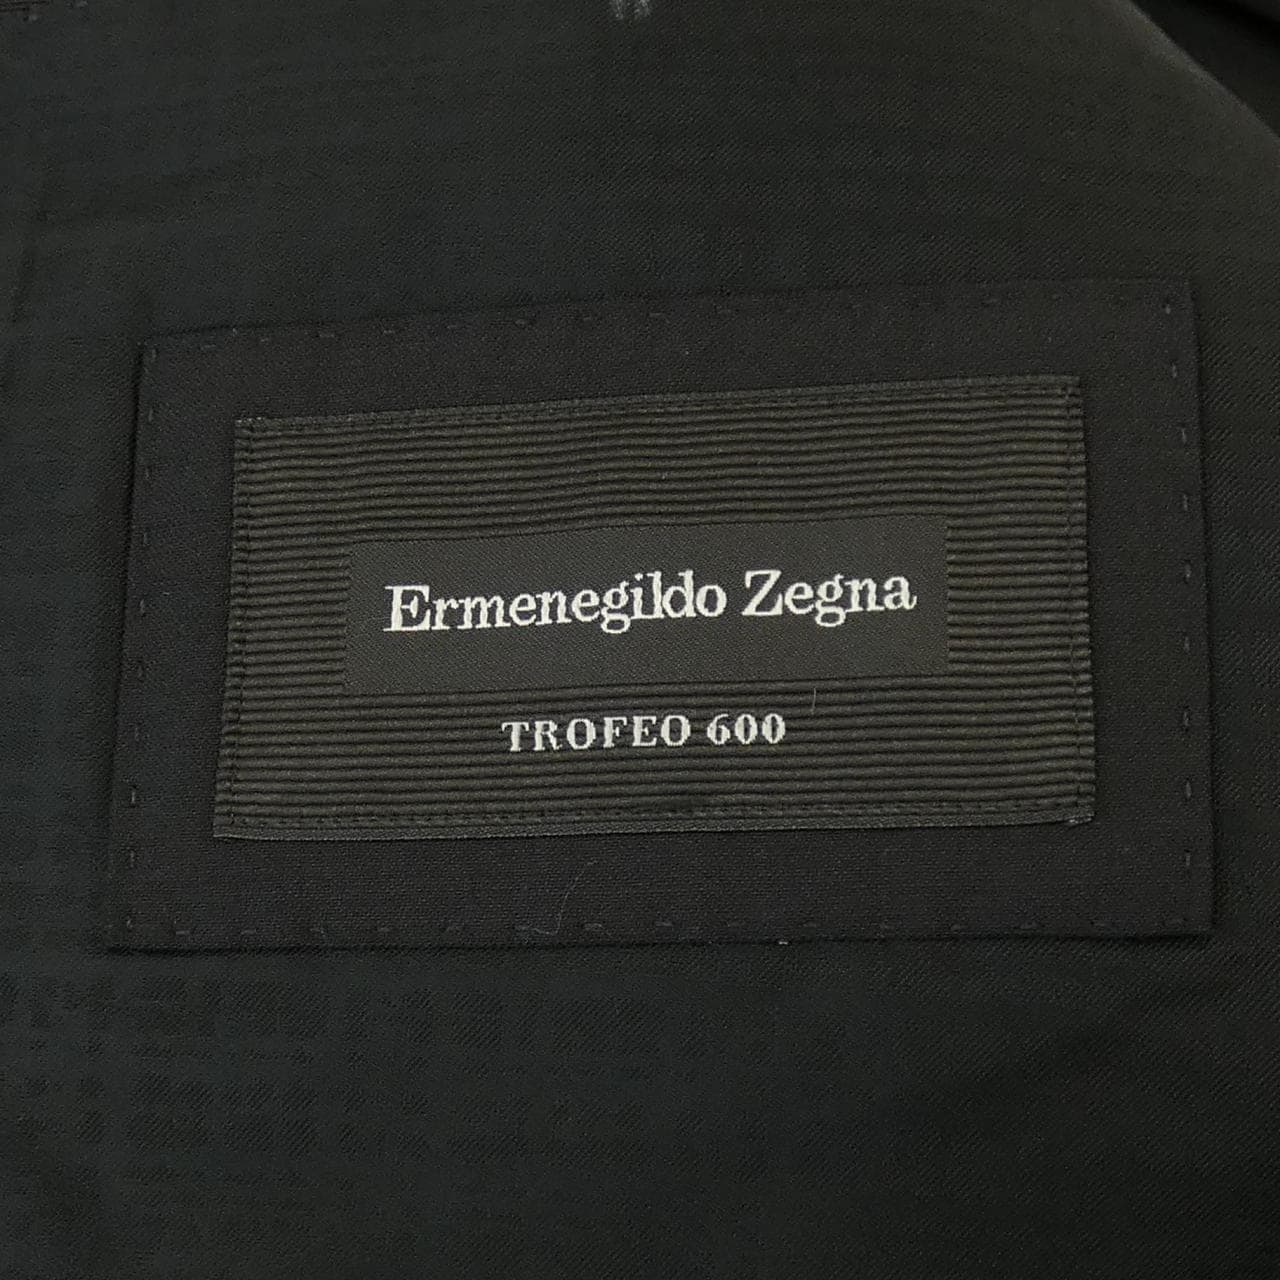 エルメネジルドゼニア Ermenegildo Zegna スーツ